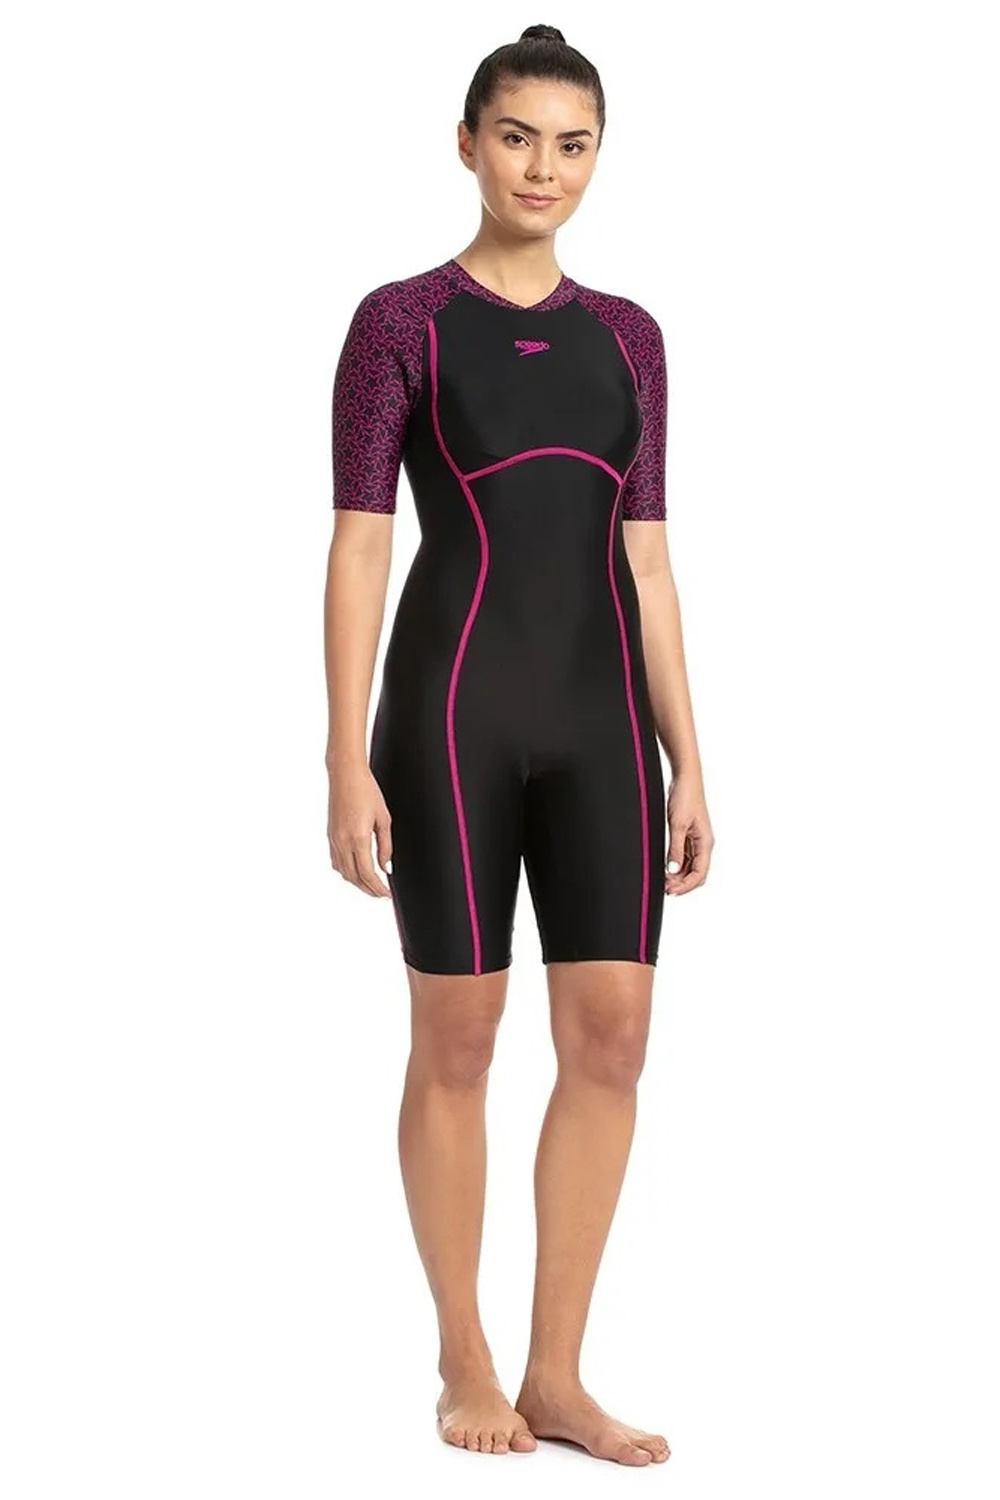 Speedo Womens Swim Kneesuit | Odel.lk